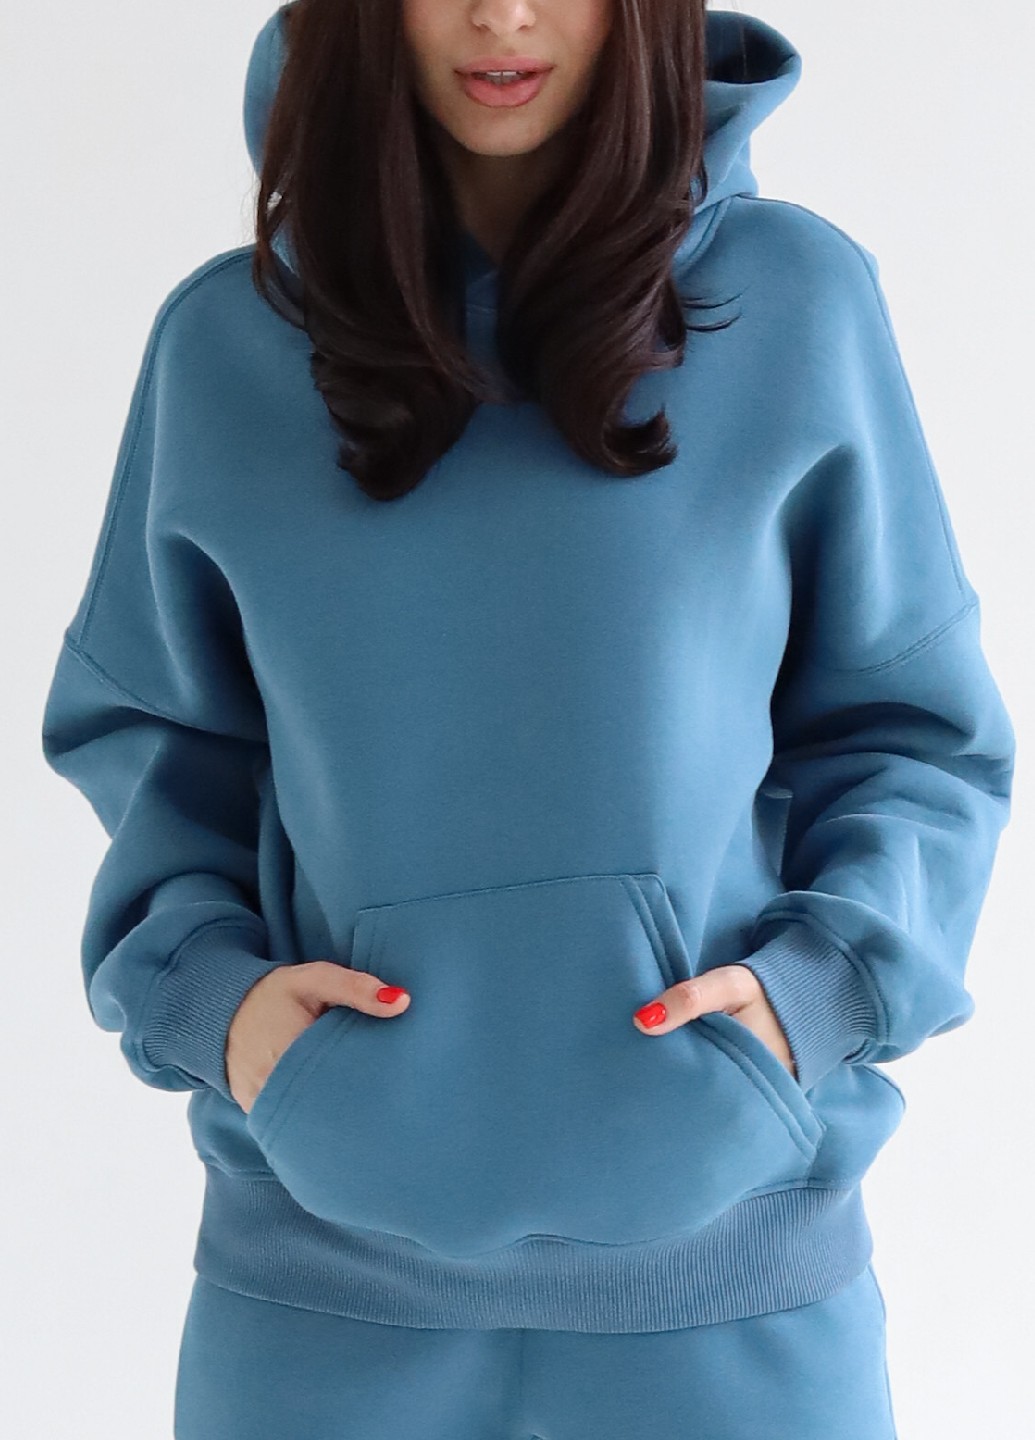 Women's Fleece Hoodie | Azur color | Made in Ukraine | Rebellis